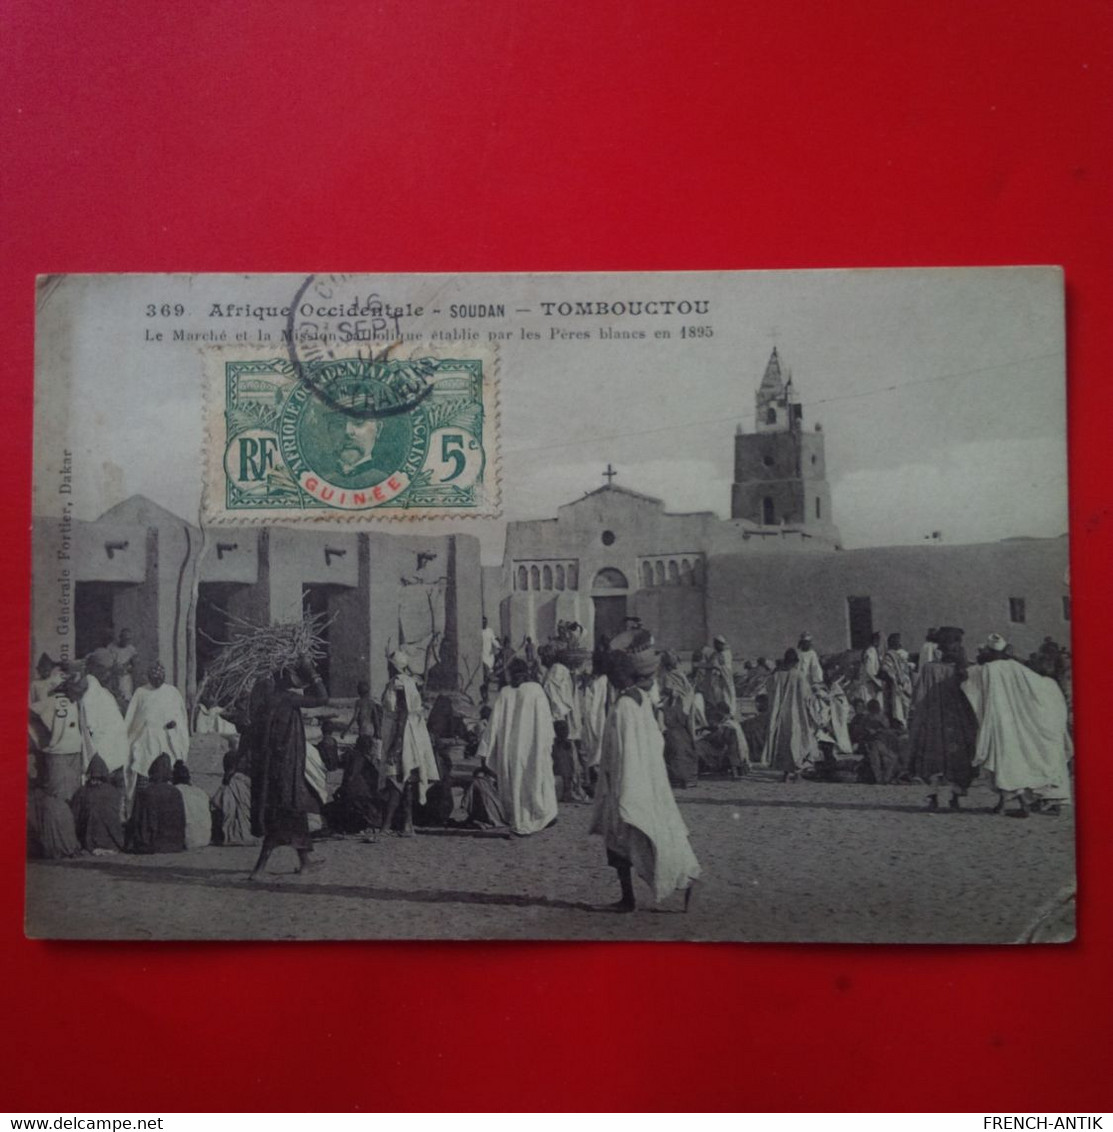 SOUDAN TOMBOUCTOU LE MARCHE - Sudan